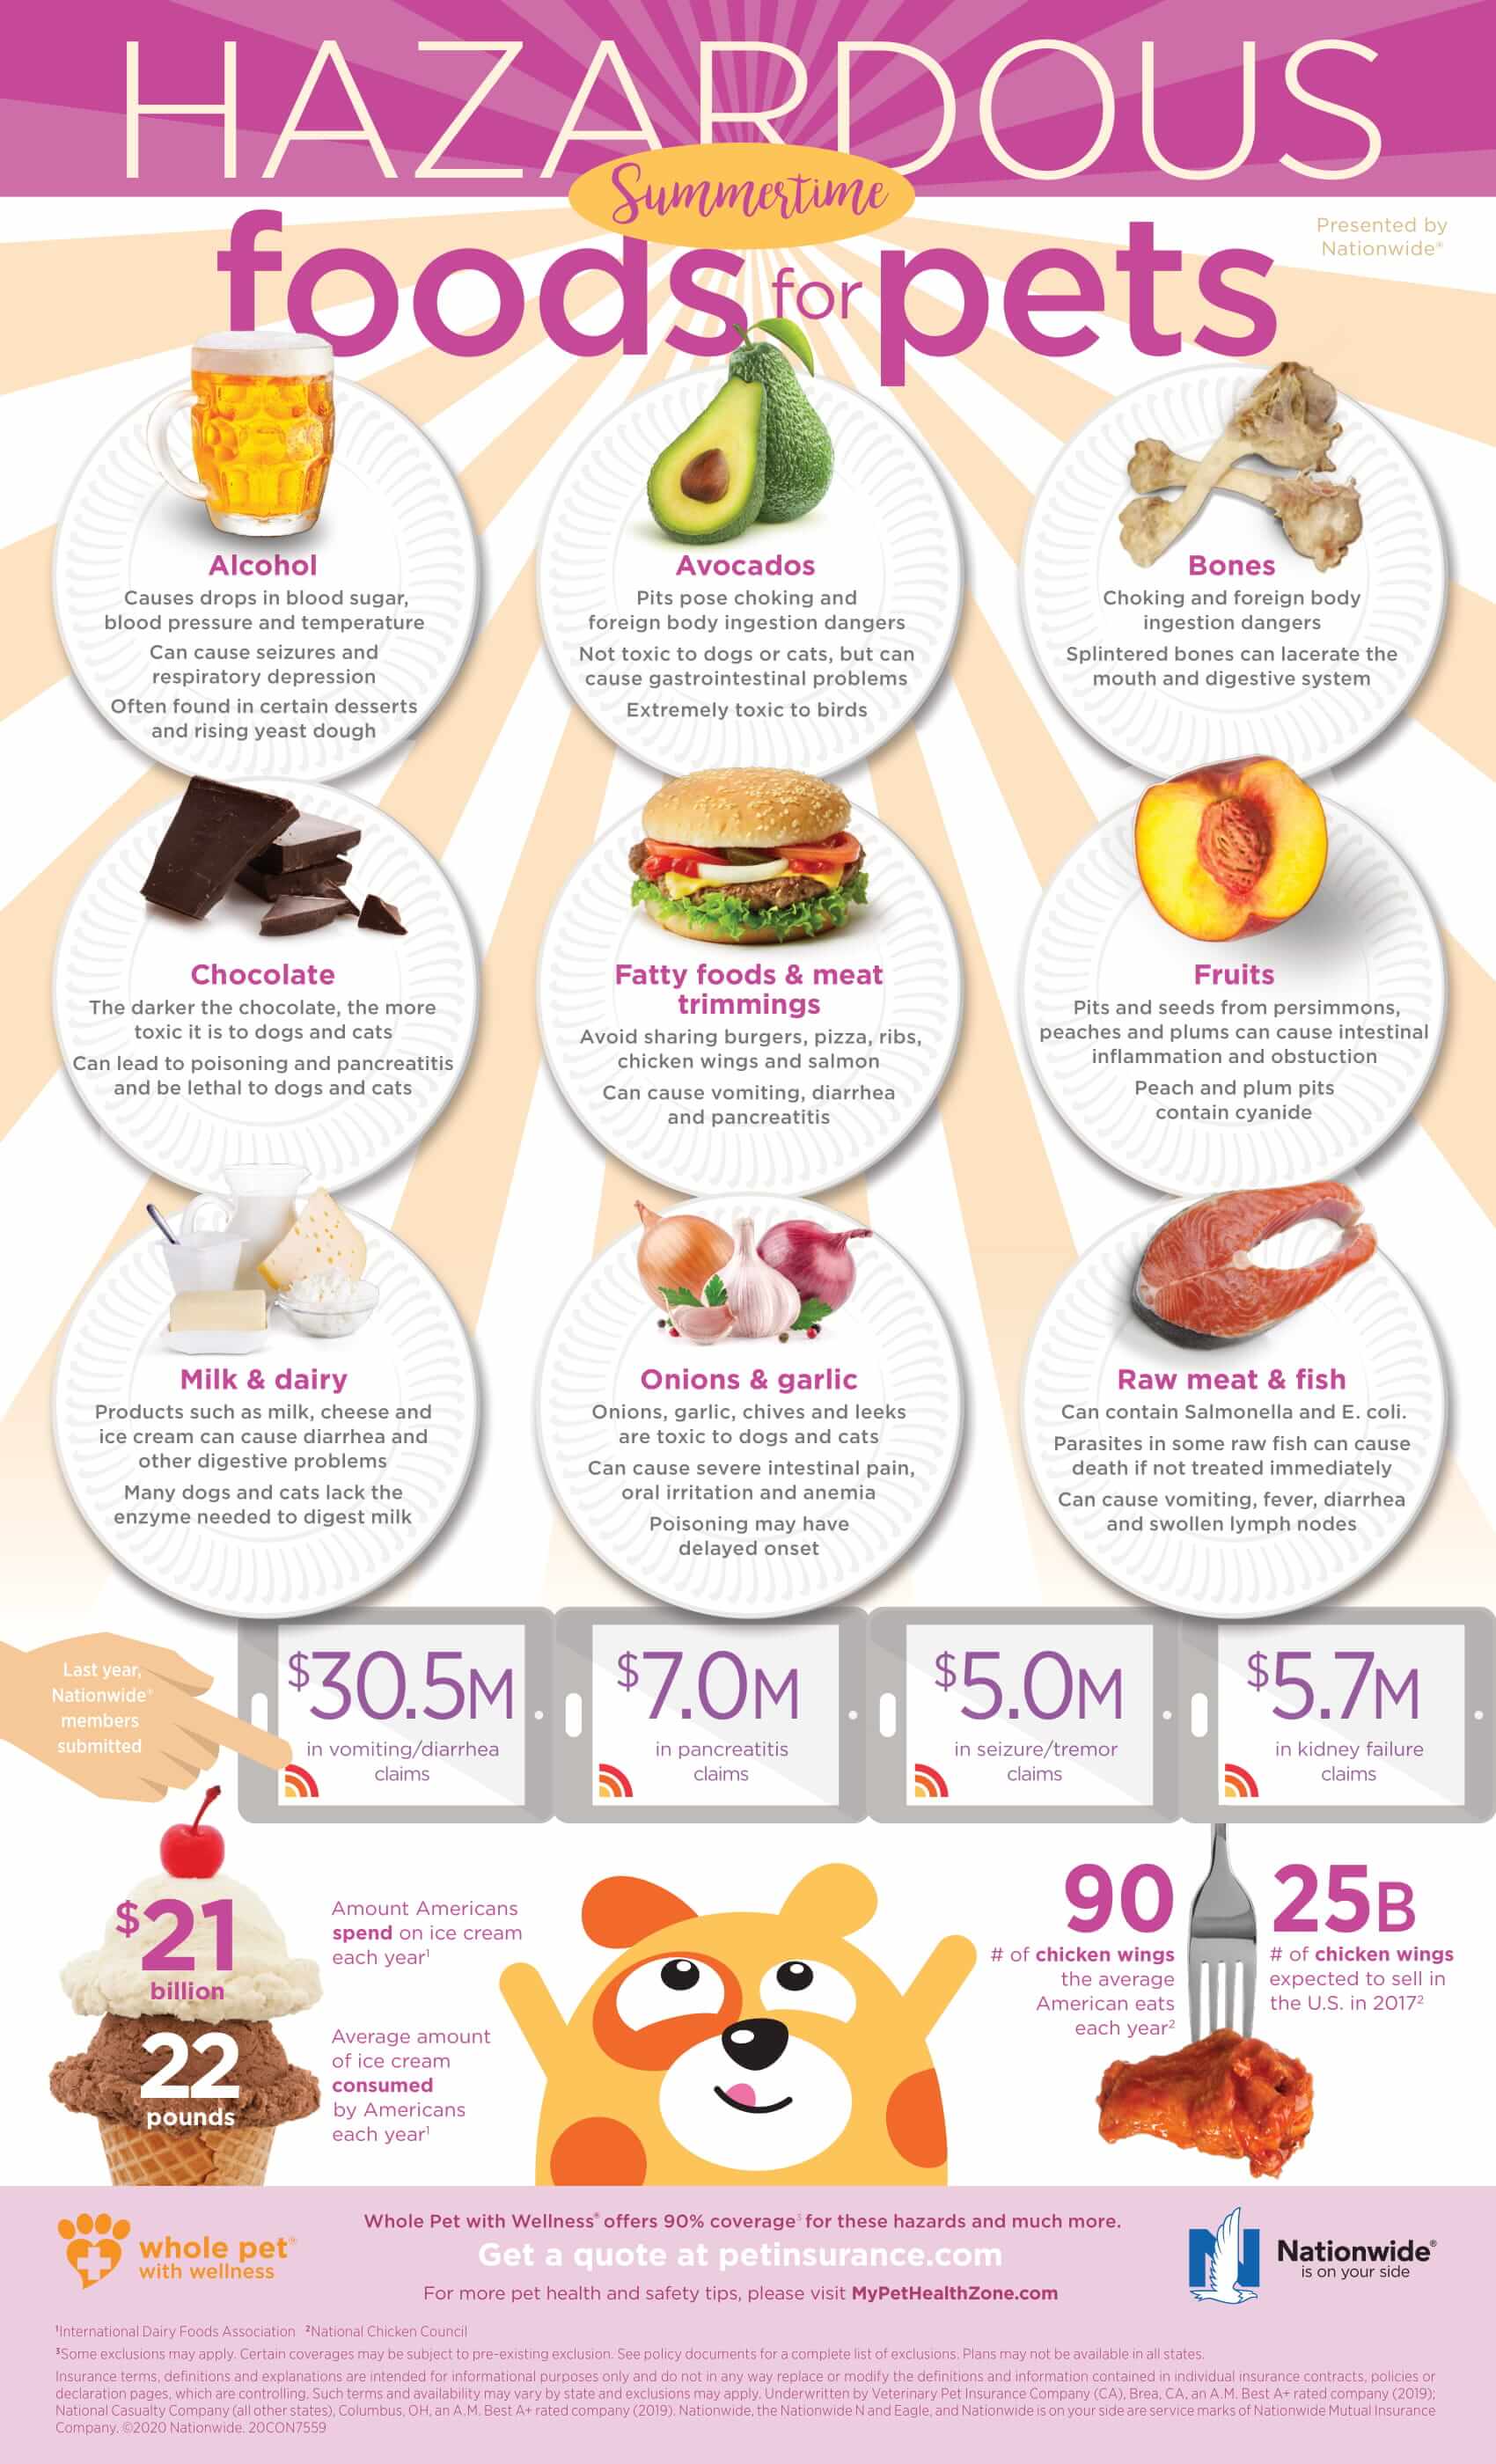 Hazardous-Summertime-Foods-Infographic-Update-1